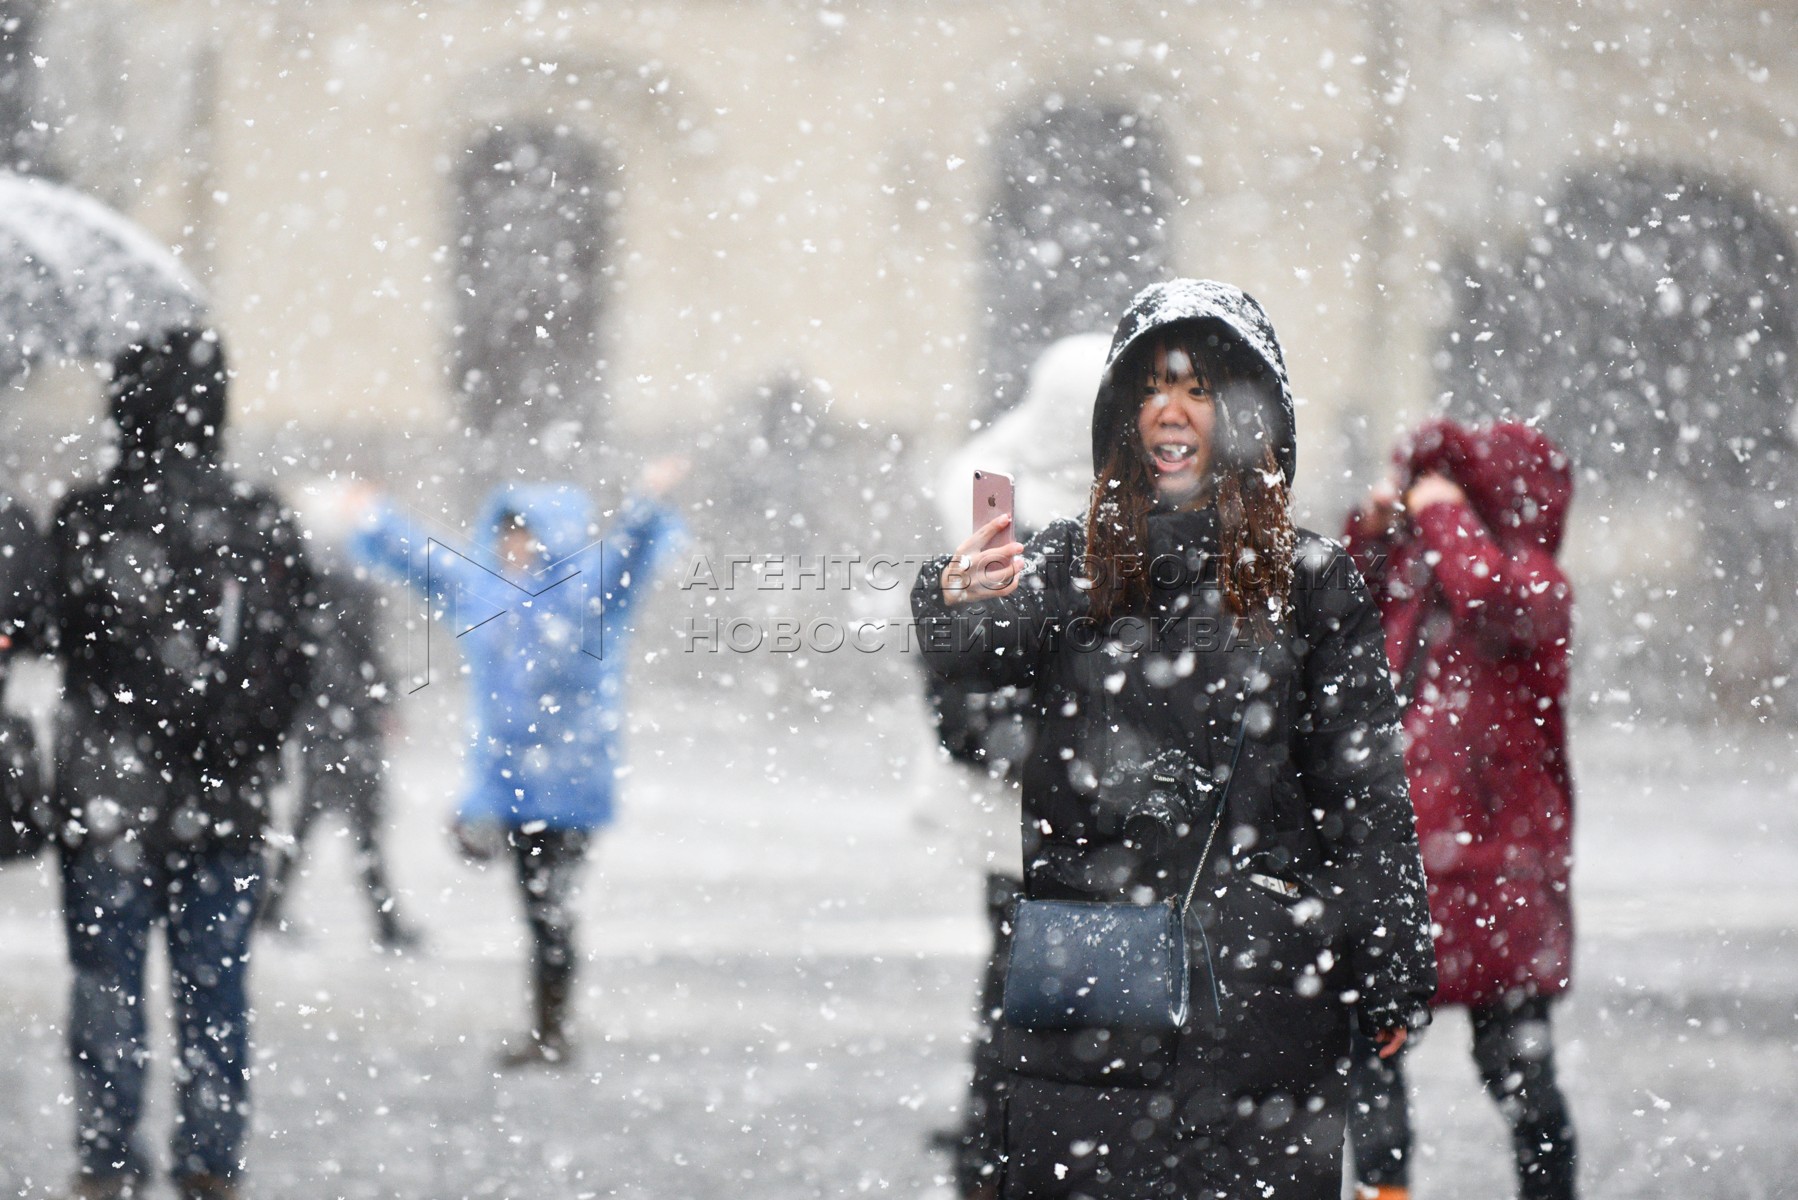 И снова выпадет снег. Опять снегопад в Москве фото. Весенний снегопад на волосах пары картинки. Лос-Анджелесе вновь выпал снег.